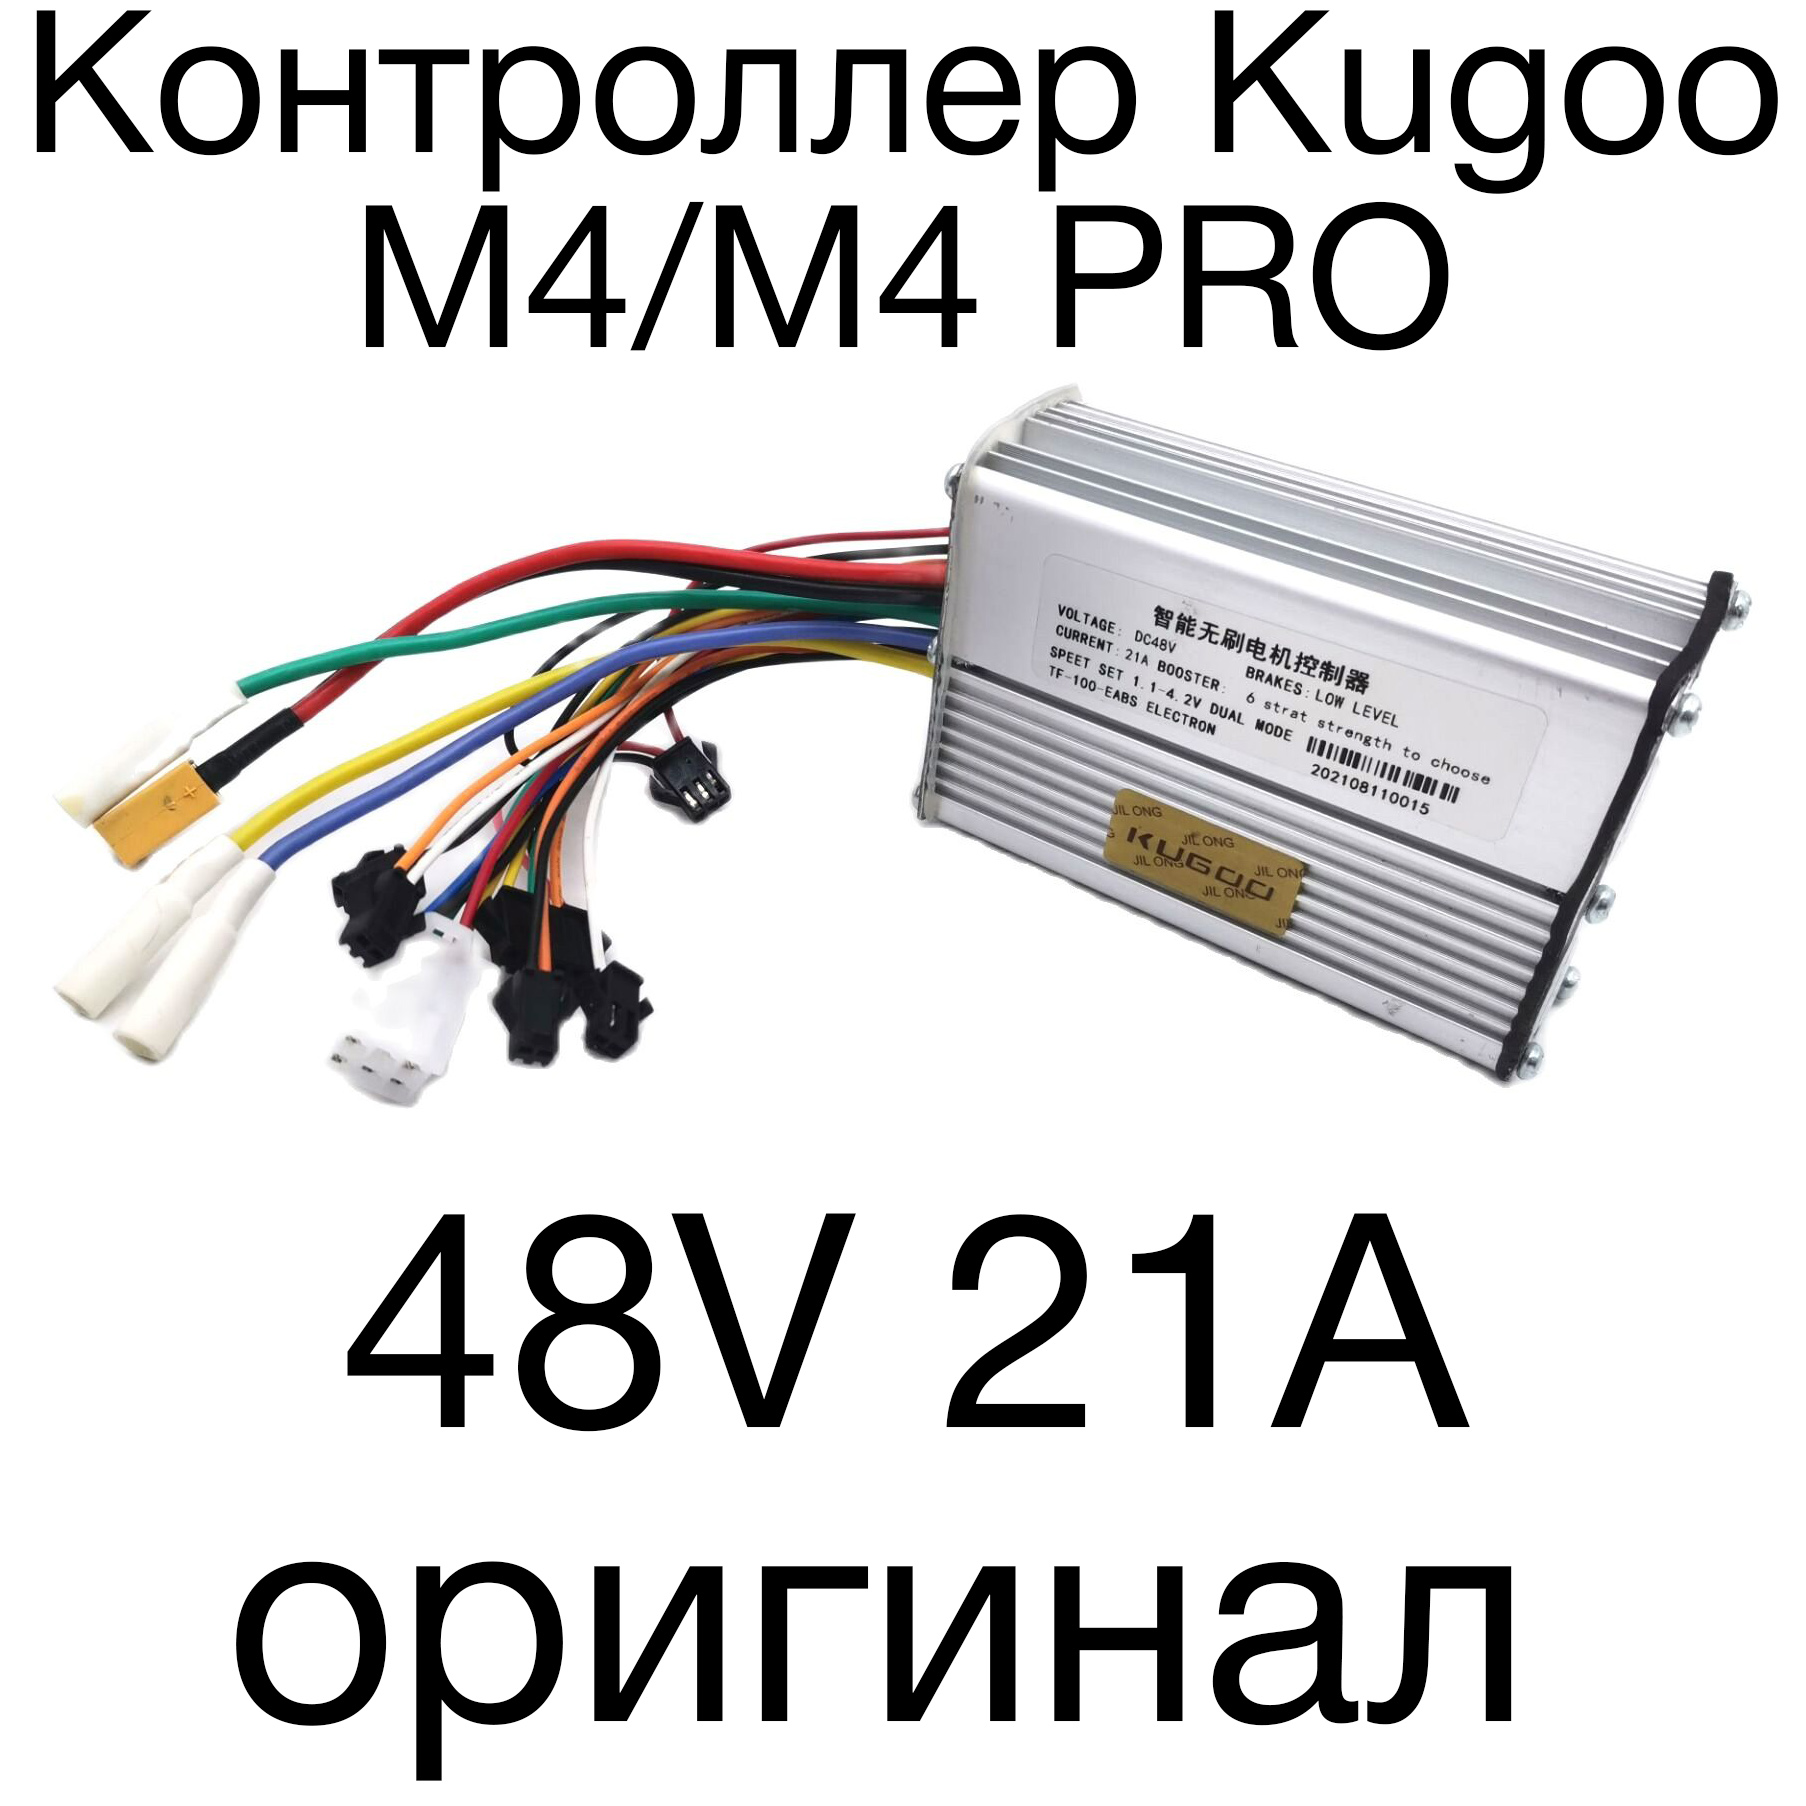 Контроллер Kugoo М4/PRO оригинал